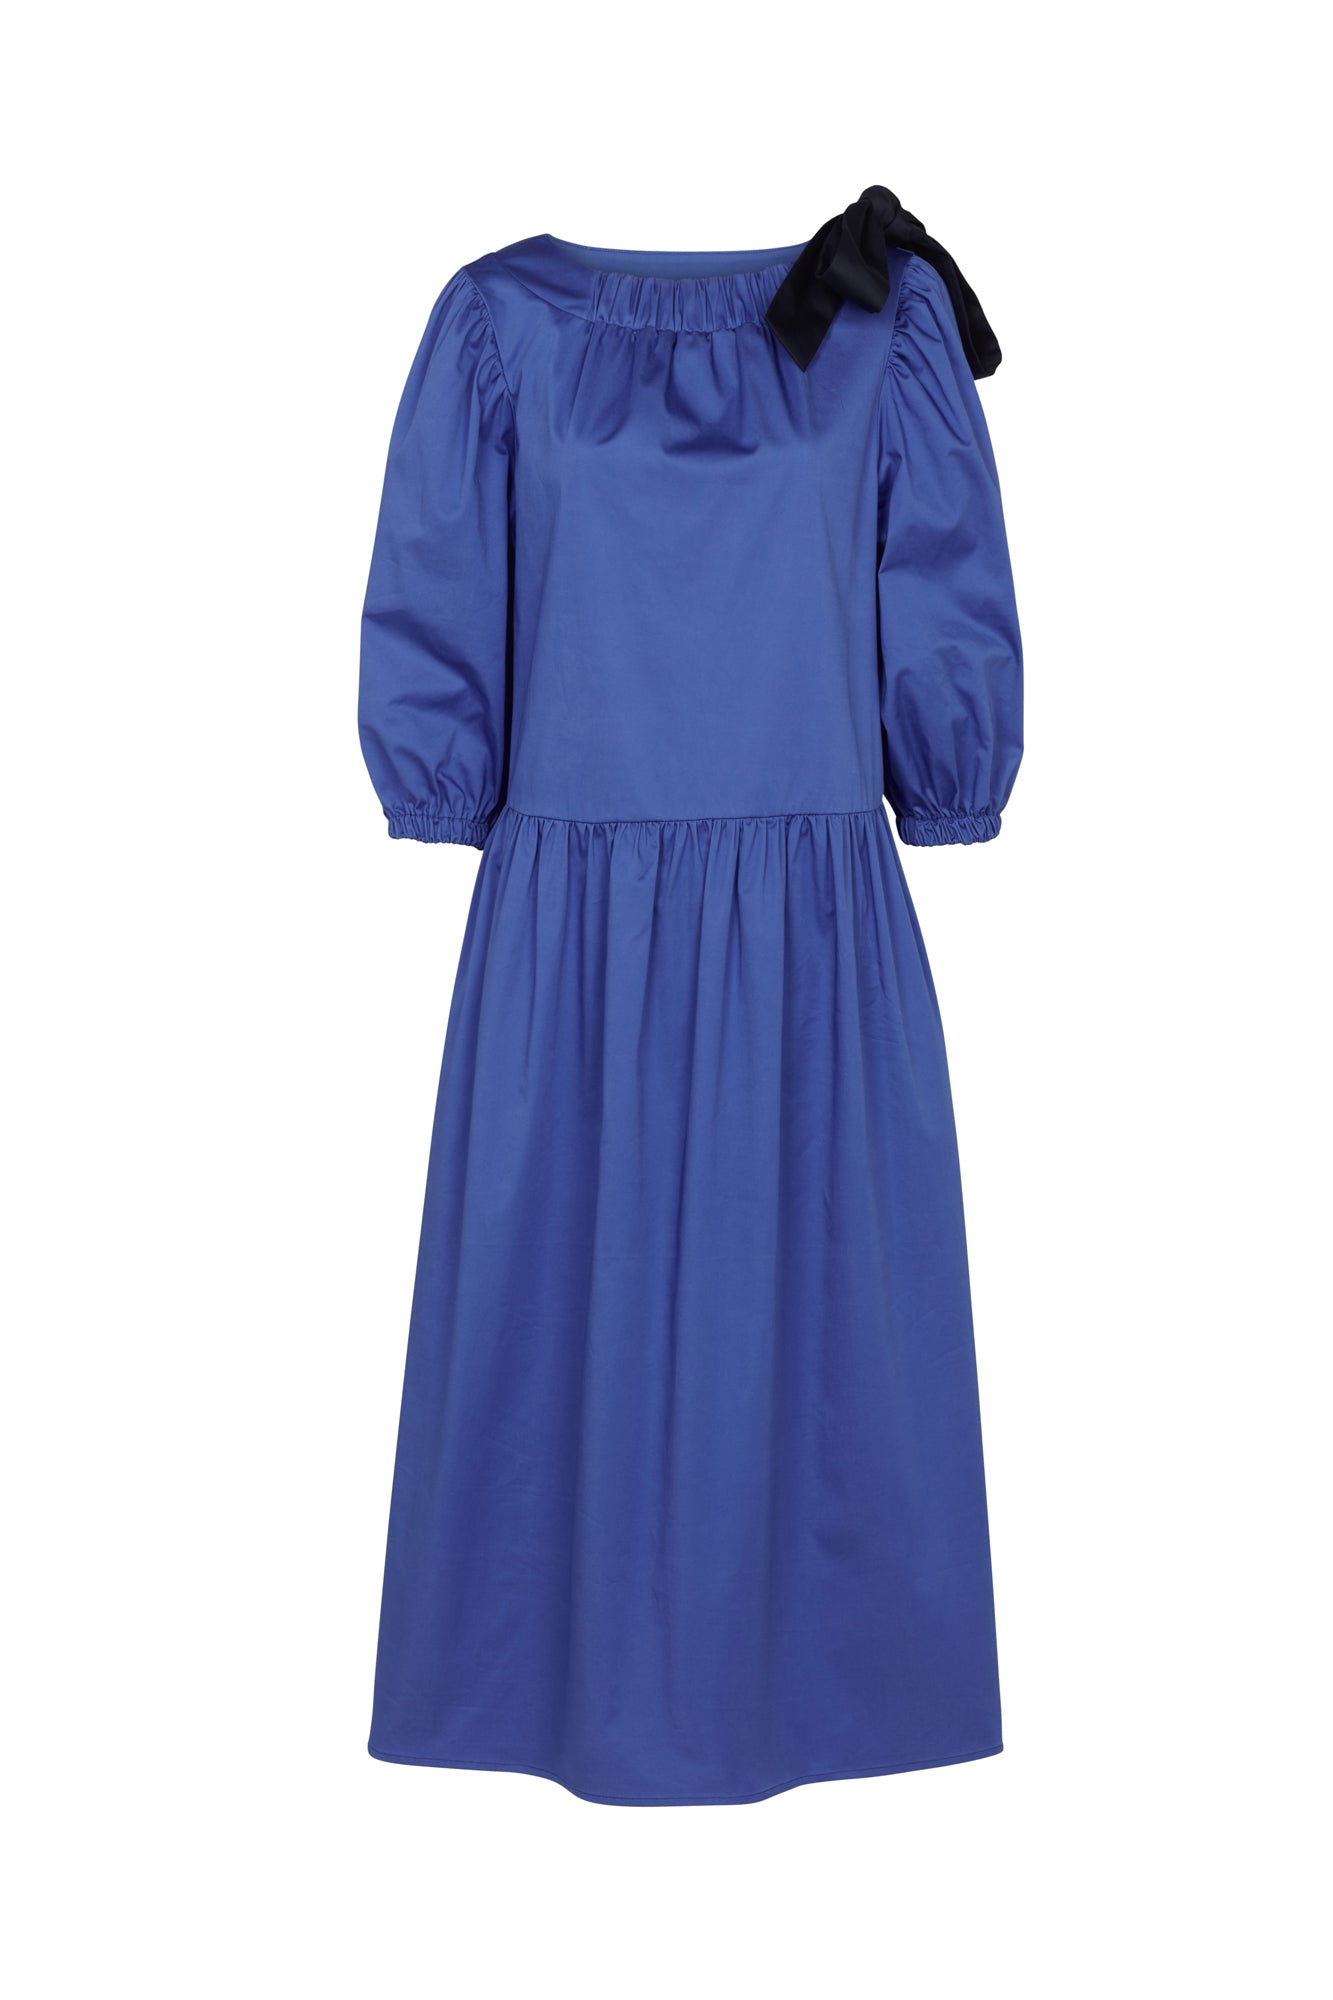 Women’s Hanna Dress Cobalt Blue Medium Mirla Beane